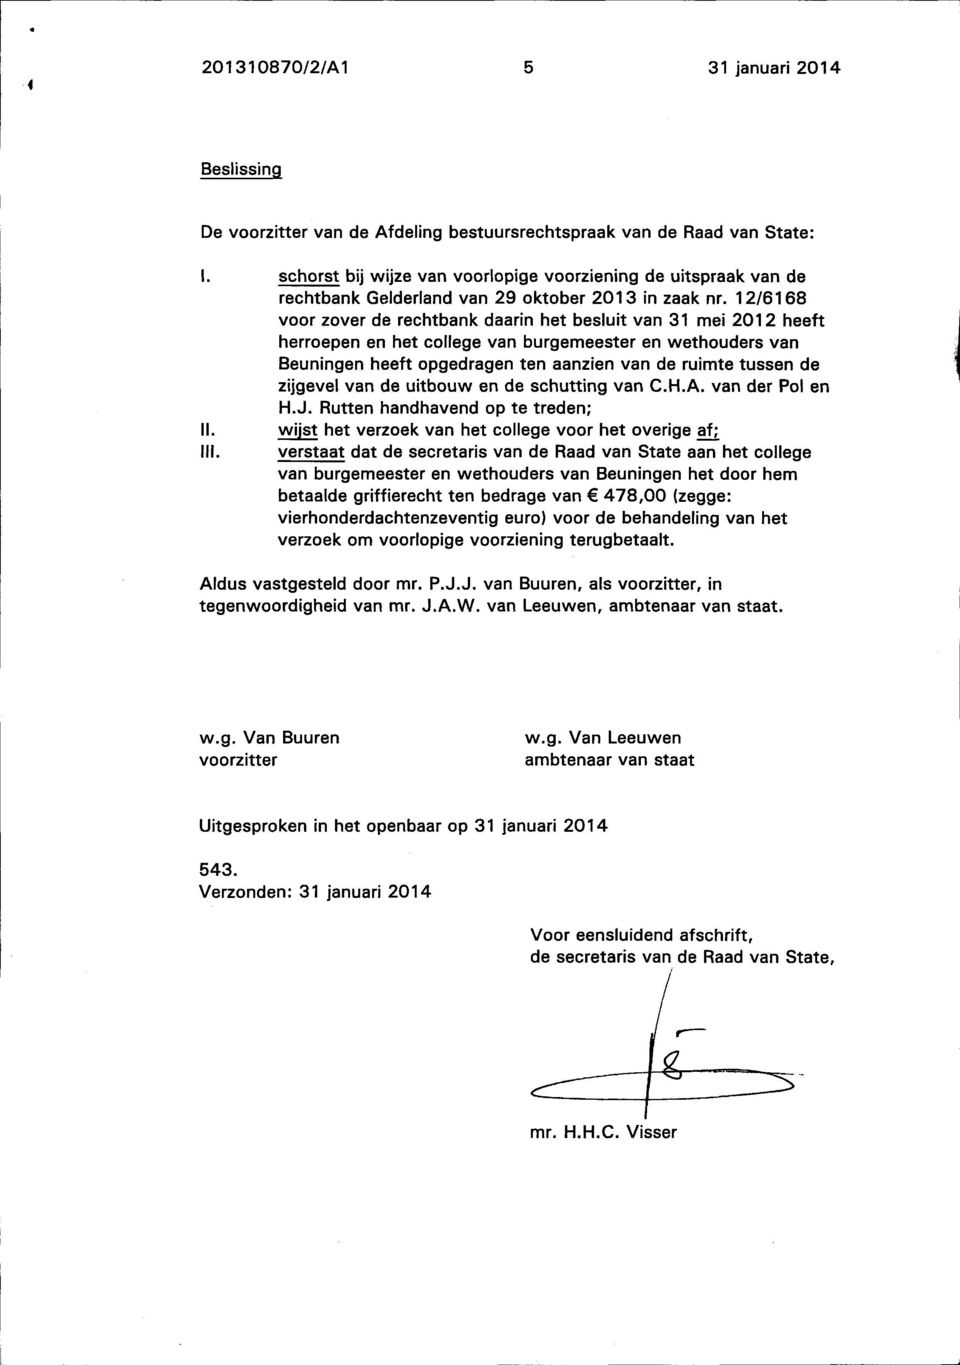 12/6168 voor zover de rechtbank daarin het besluit van 31 mei 2012 heeft herroepen en het college van burgemeester en wethouders van Beuningen heeft opgedragen ten aanzien van de ruimte tussen de